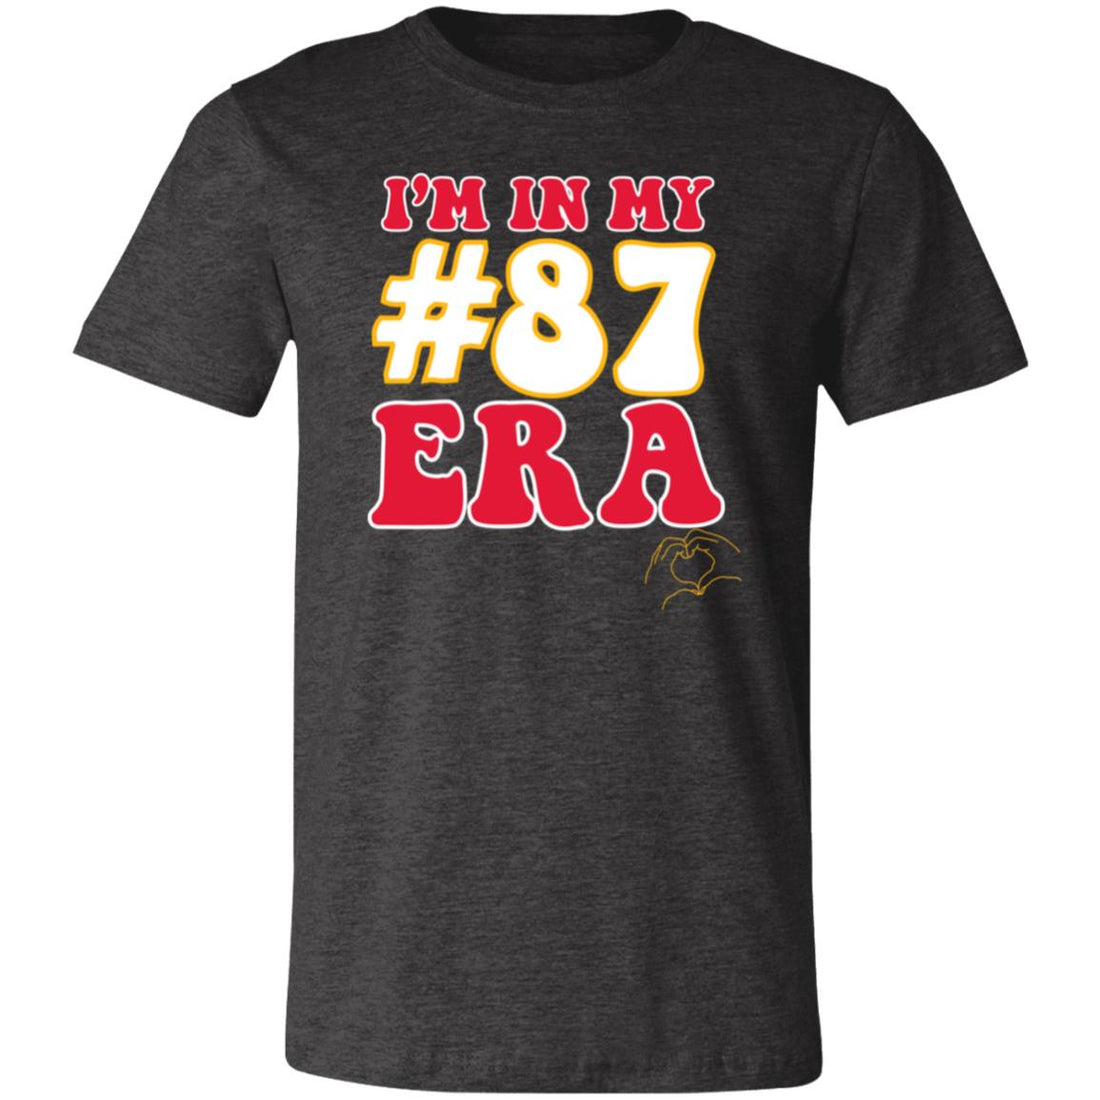 #87 ERA Short-Sleeve T-Shirt - T-Shirts - Positively Sassy - #87 ERA Short-Sleeve T-Shirt